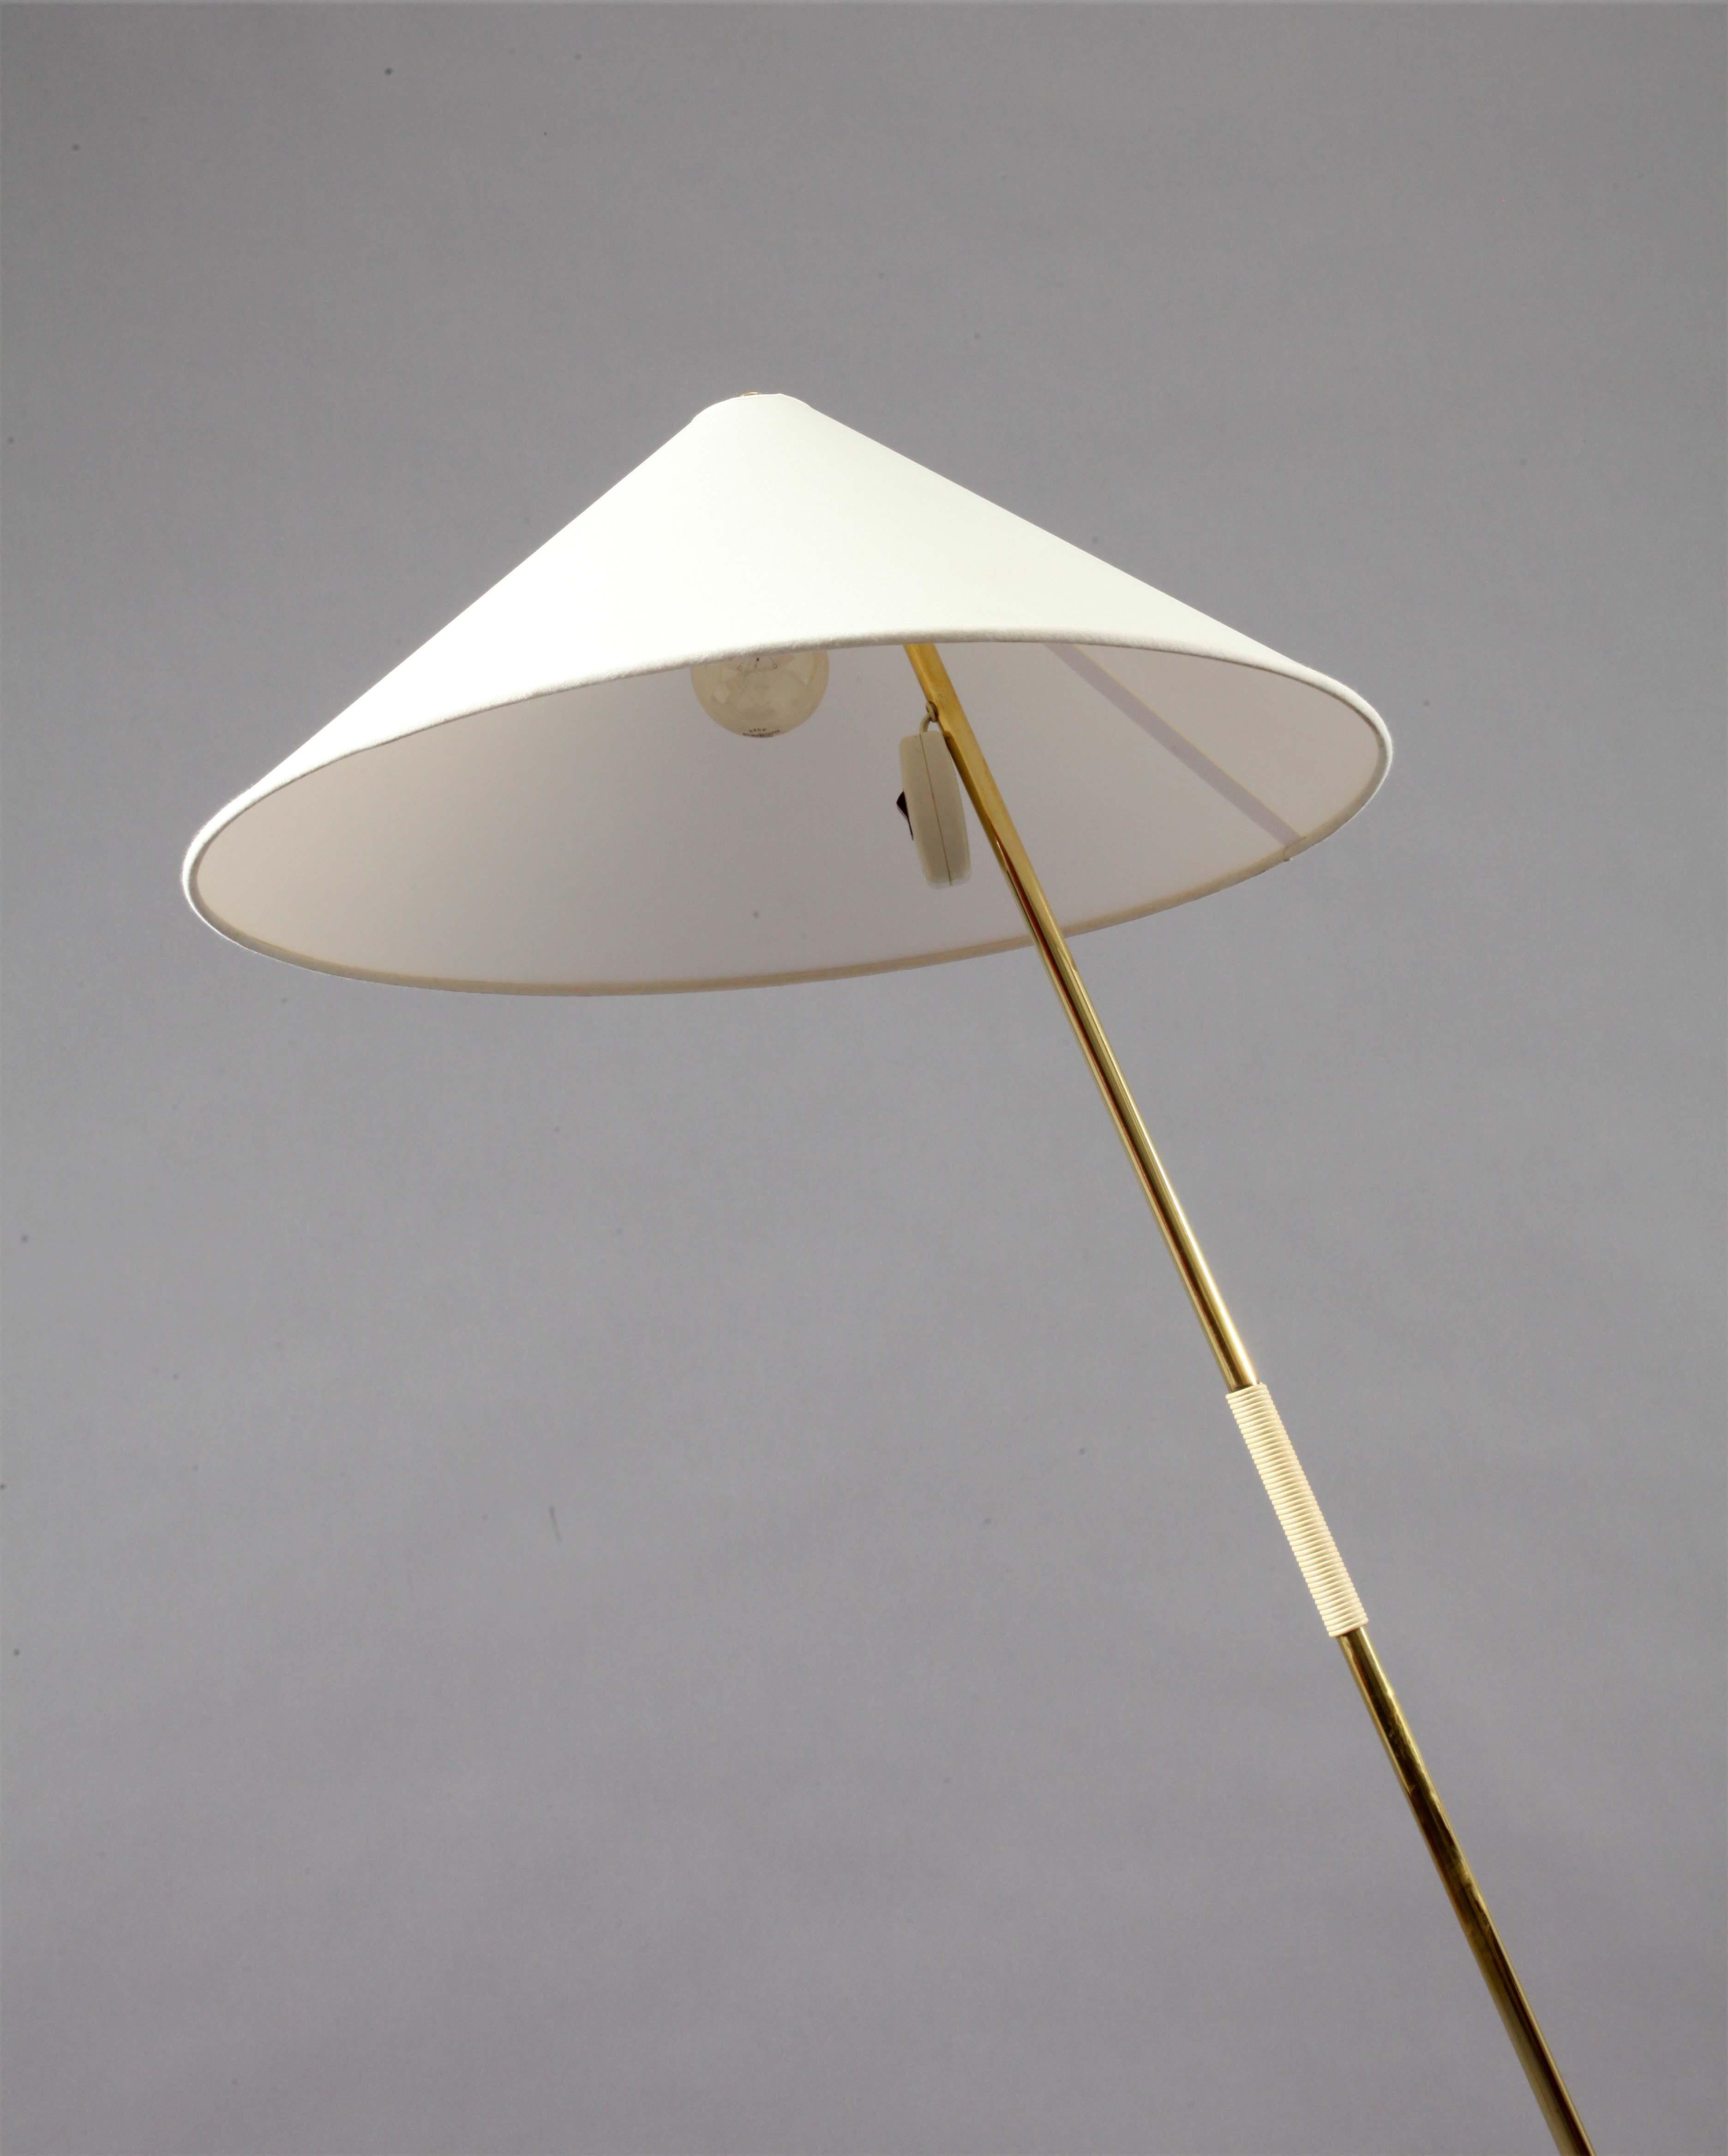 Floorlamp
Vienna, 1950
Rupert Nikoll
brass base, fabric shade.